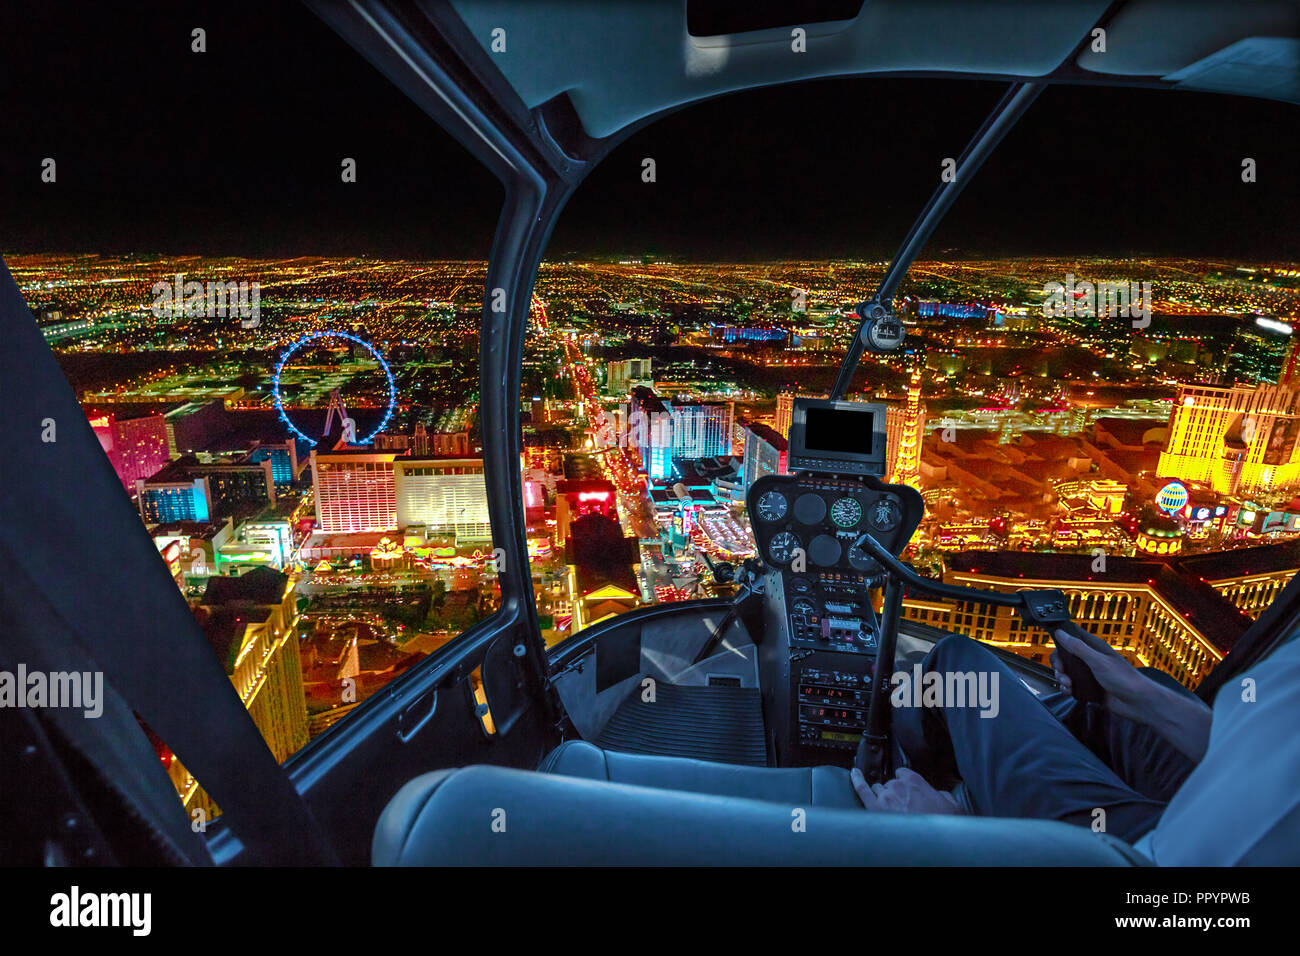 Hubschrauber Innenraum auf Las Vegas Gebäuden und Wolkenkratzern in  Downtown mit beleuchteten Casino Hotels in der Nacht. Rundflug über Vegas  Skyline bei Nacht in die Nevada Vereinigte Staaten von Amerika  Stockfotografie -